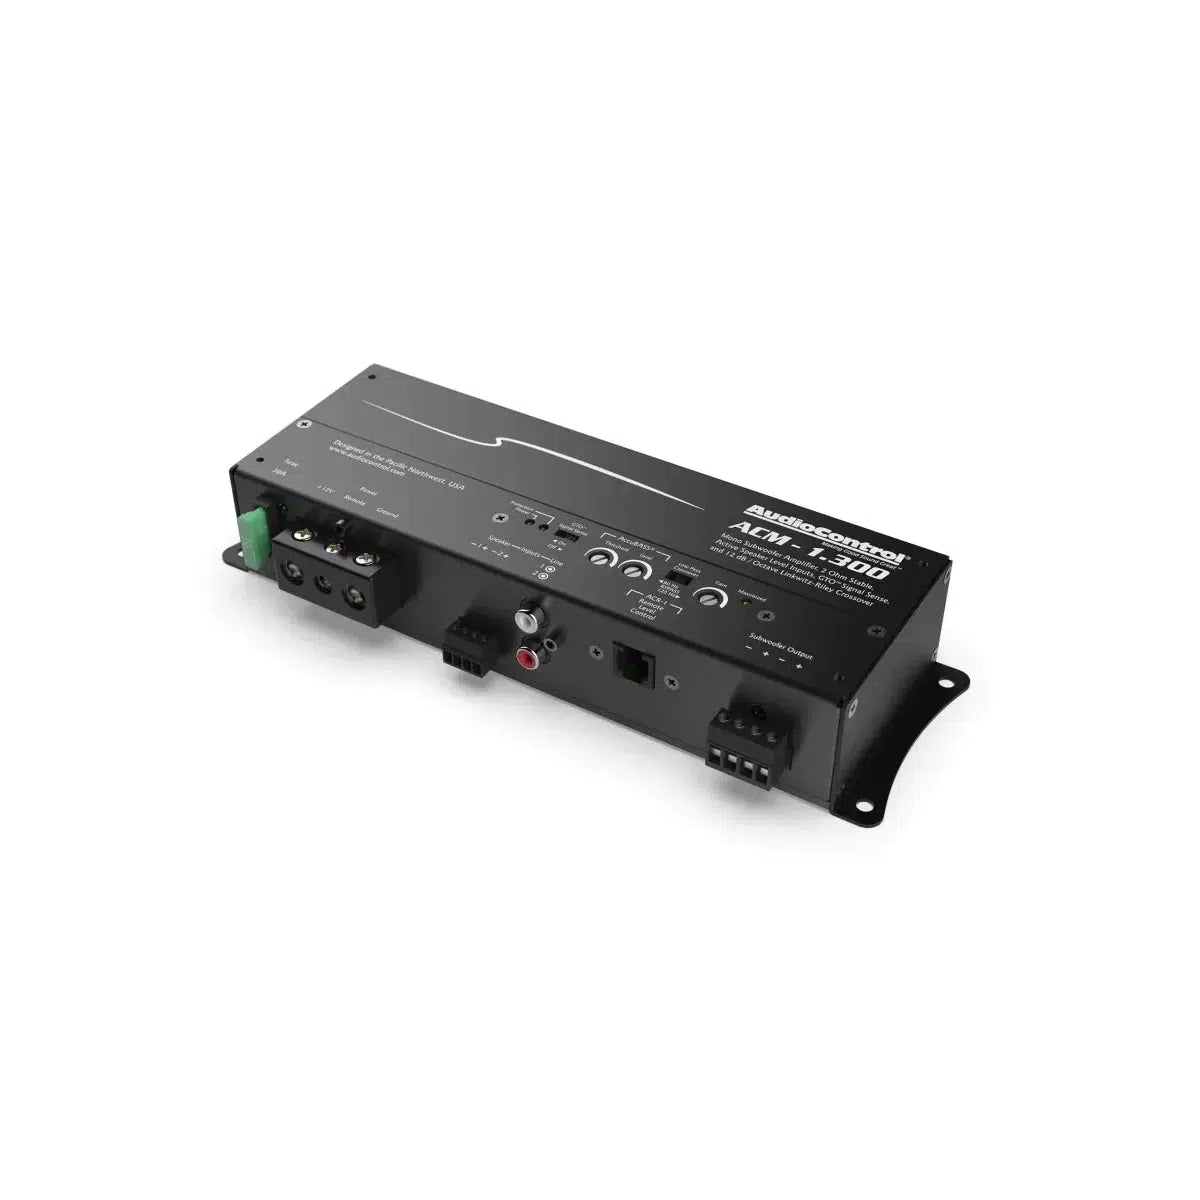 Audiocontrol-ACM-1.300-1-Channel Amplifier-Masori.de